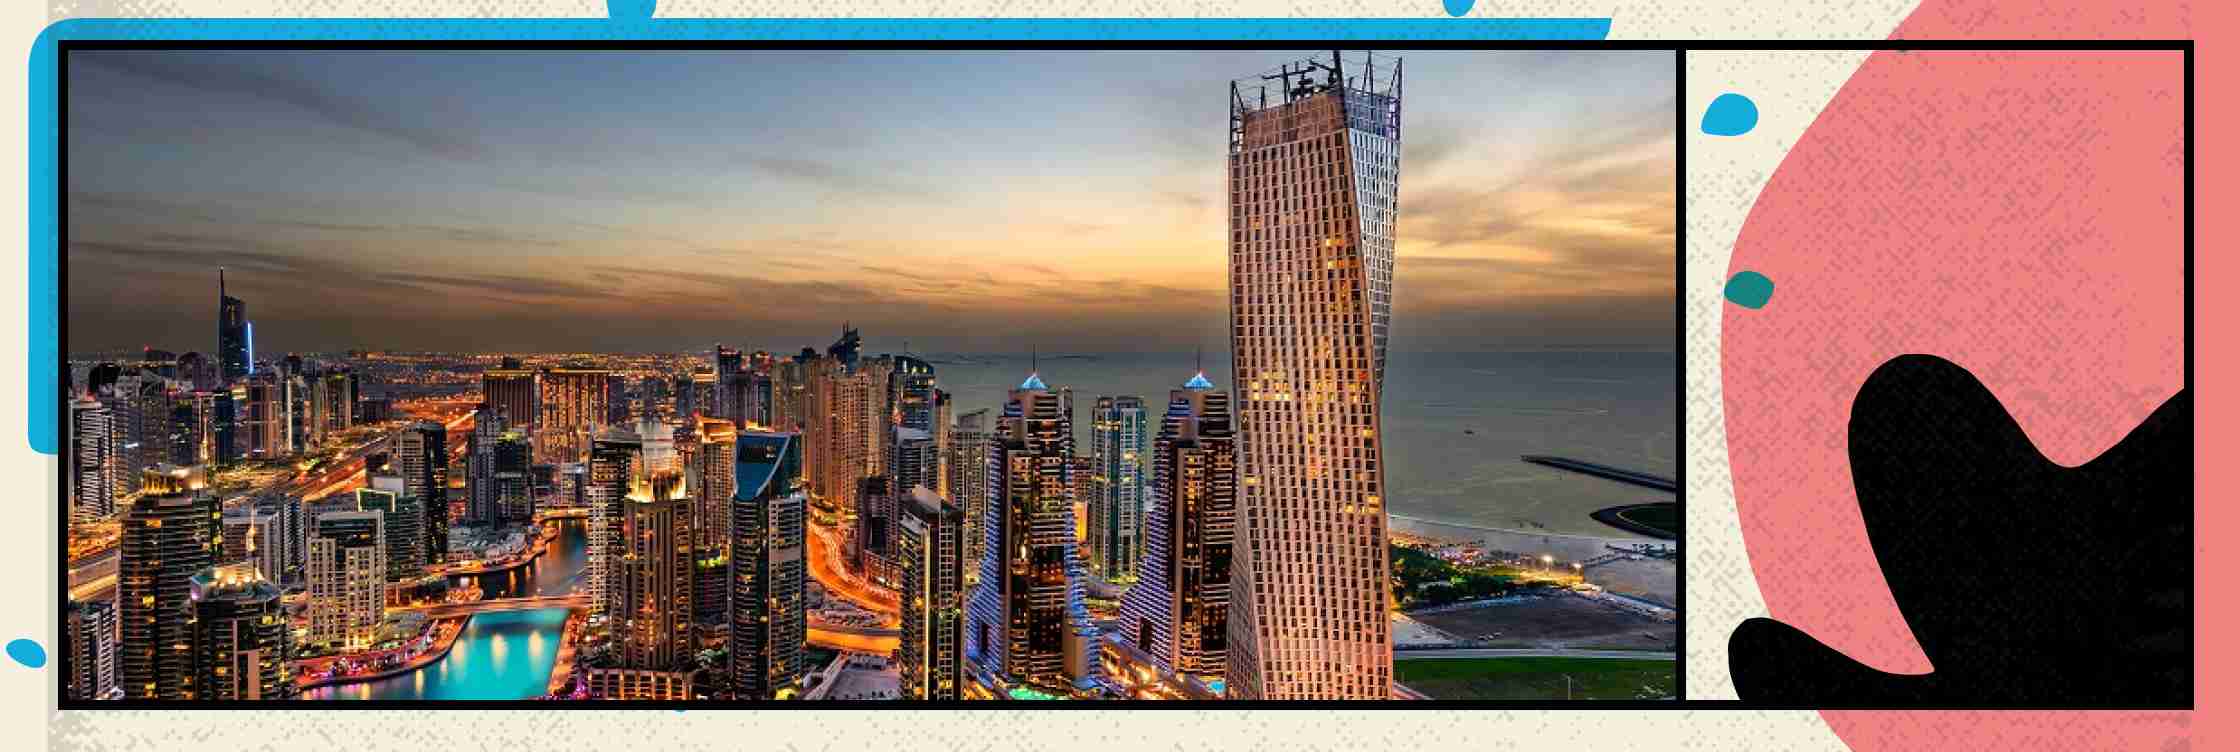 Власти Дубая развивают сектор цифровой экономики